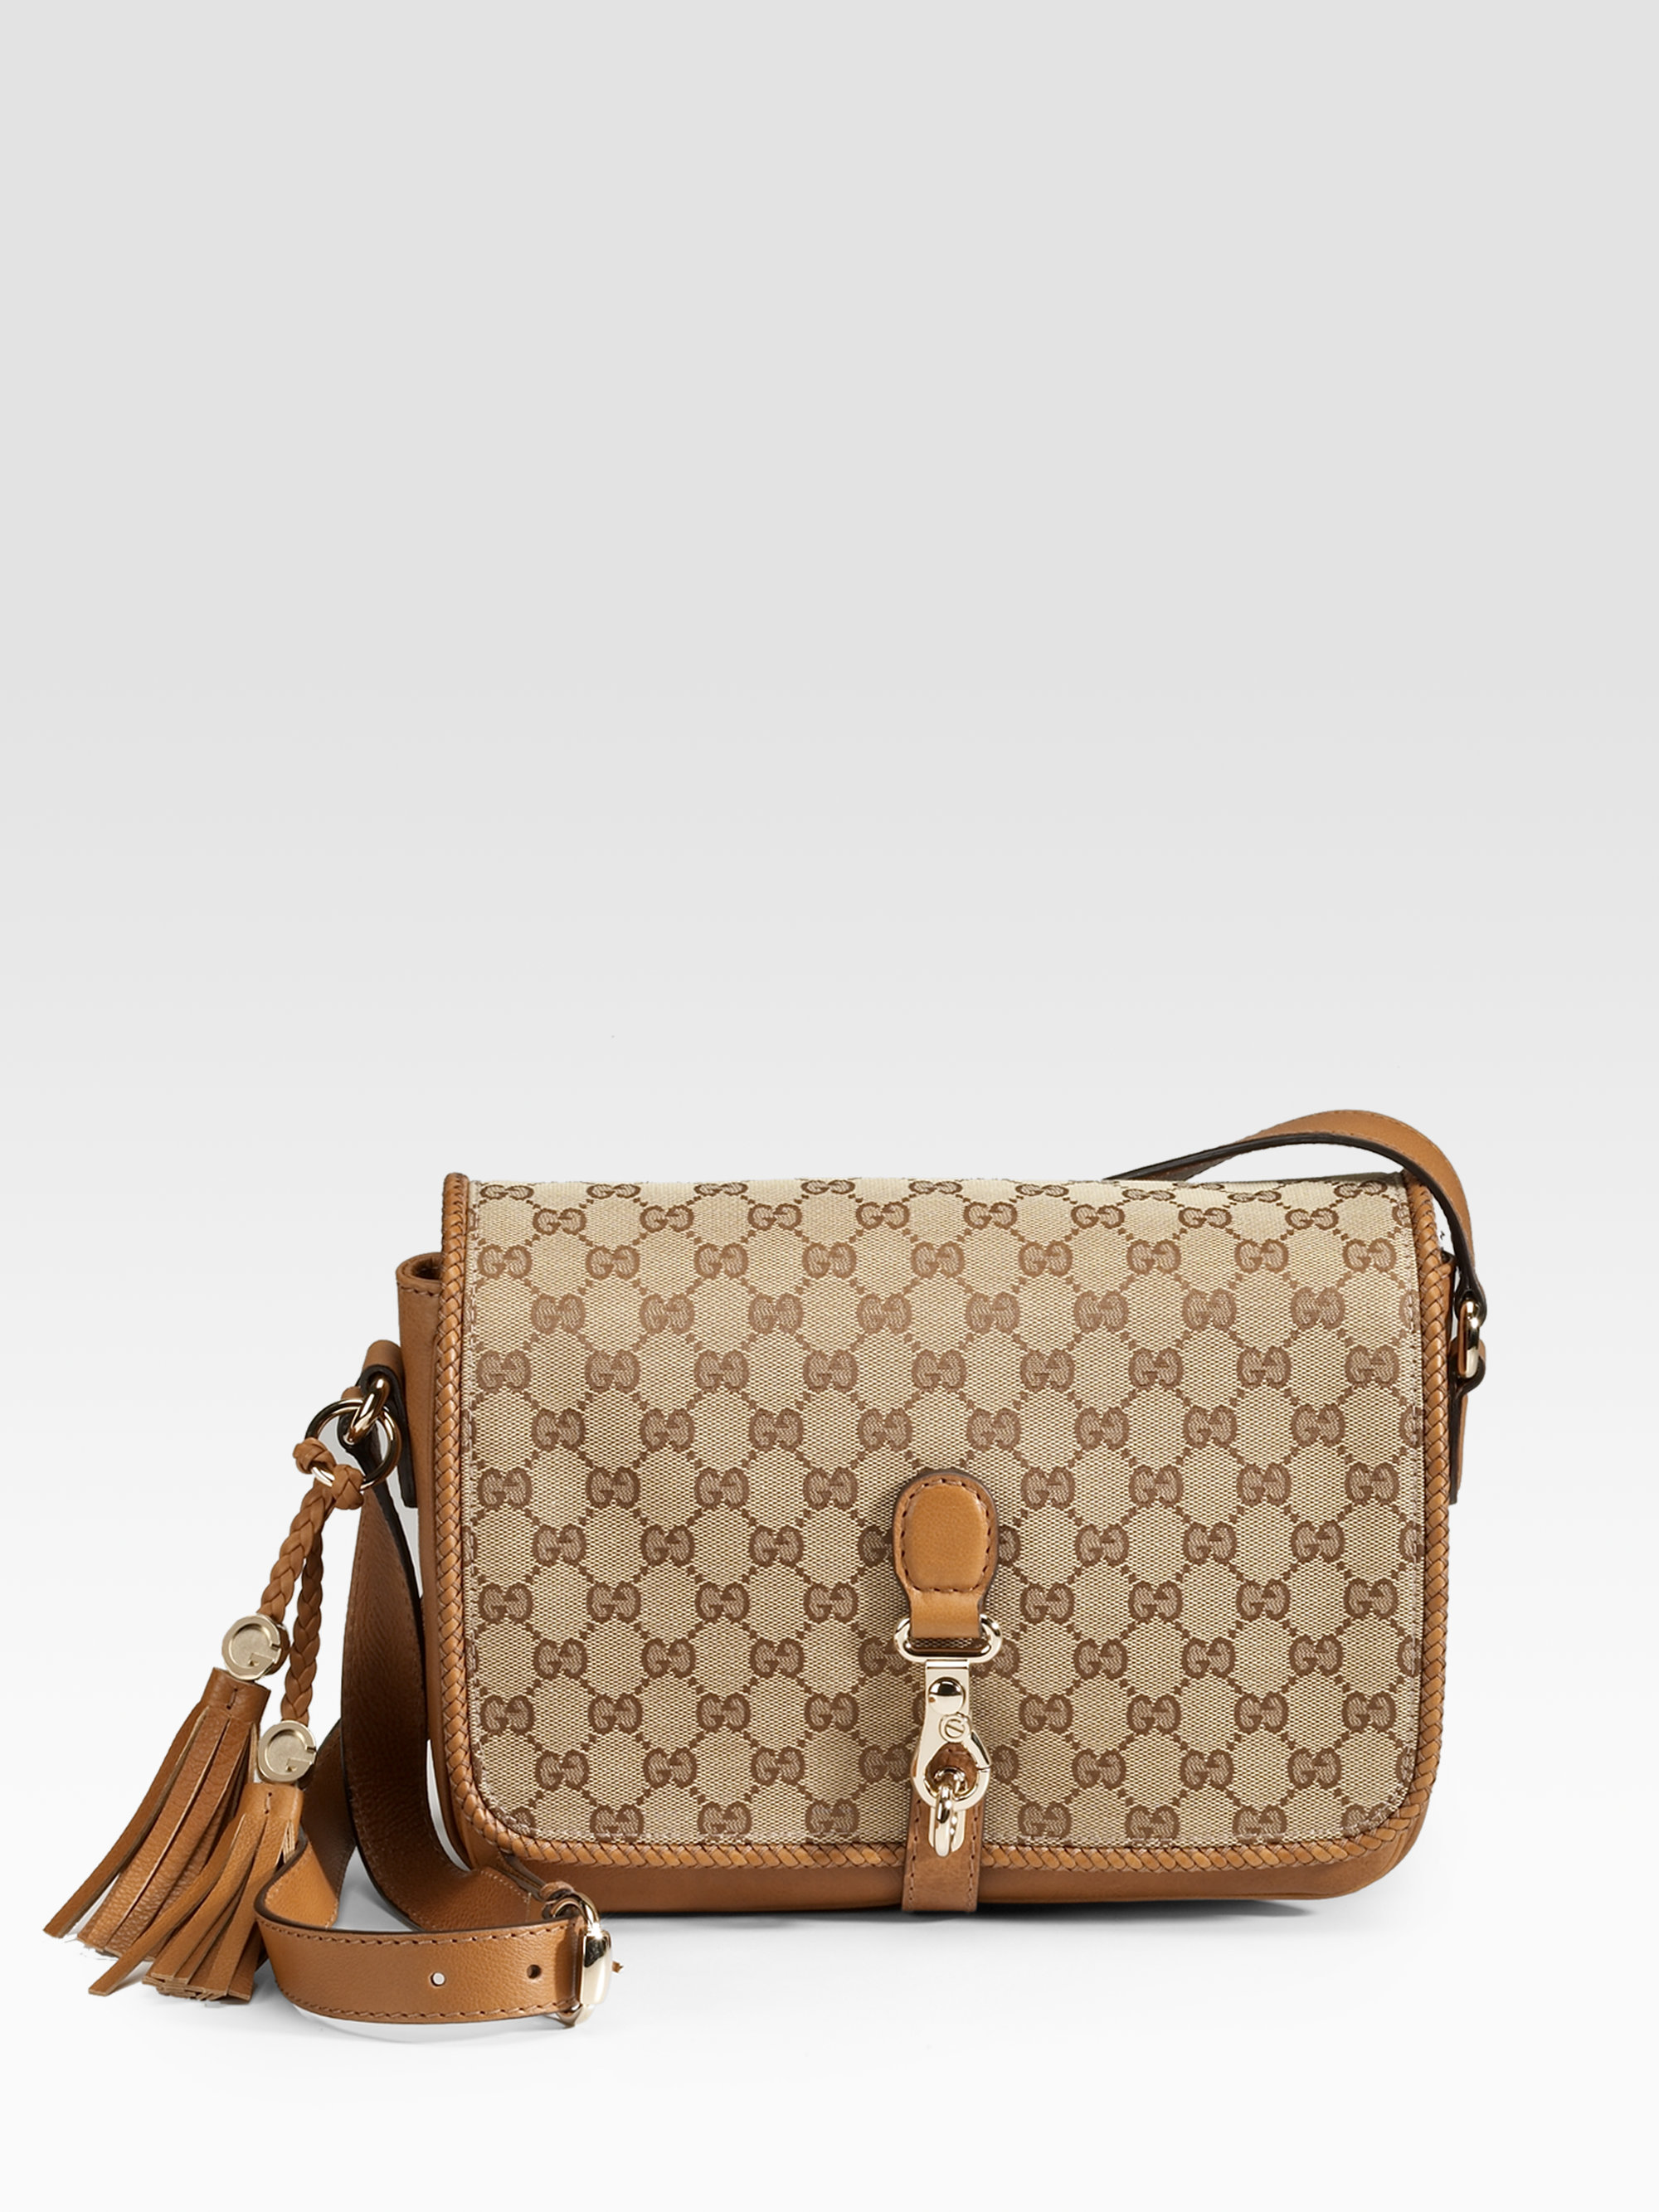 Gucci Marrakech Medium Messenger Bag in Brown - Lyst